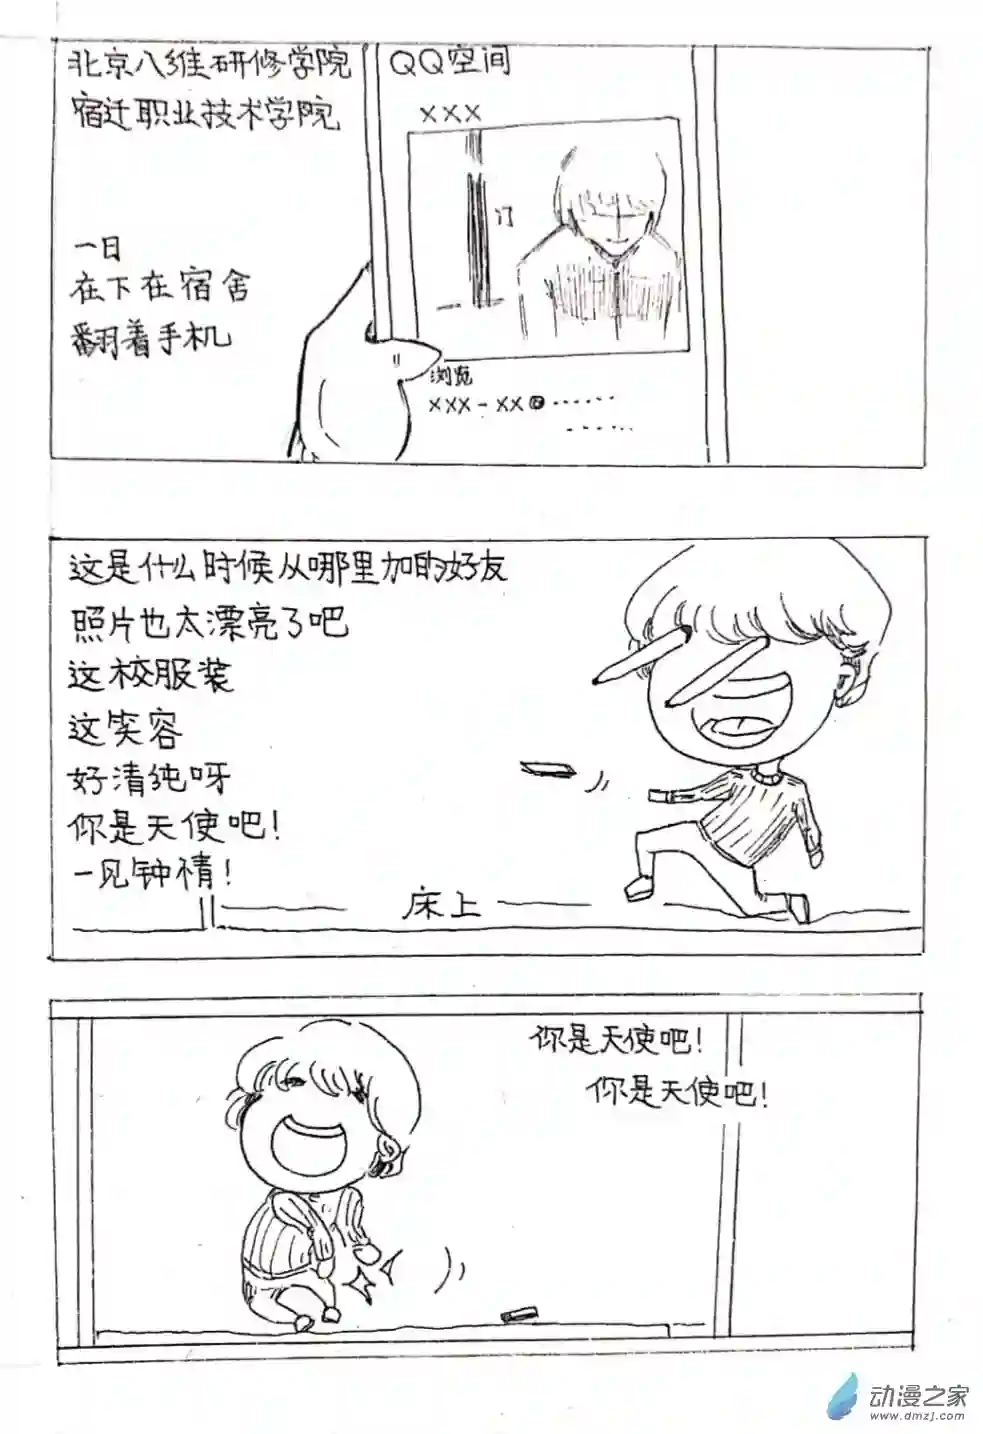 日刊漫画10 少年赏妹篇七